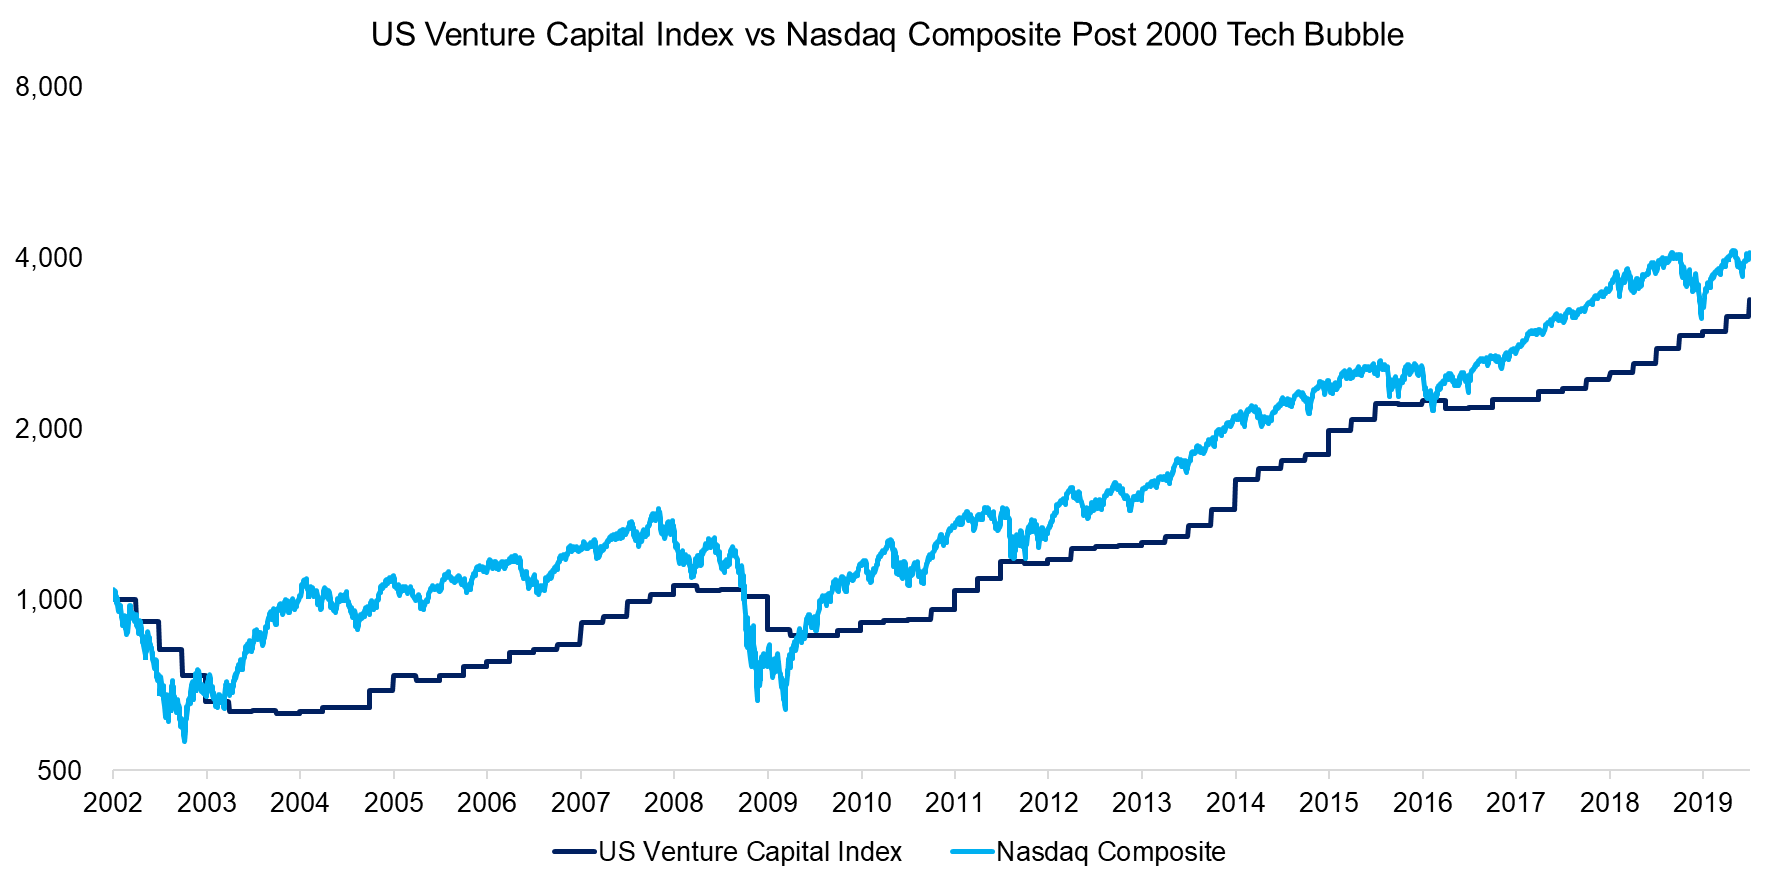 US Venture Capital Index vs Nasdaq Composite Post 2000 Tech Bubble